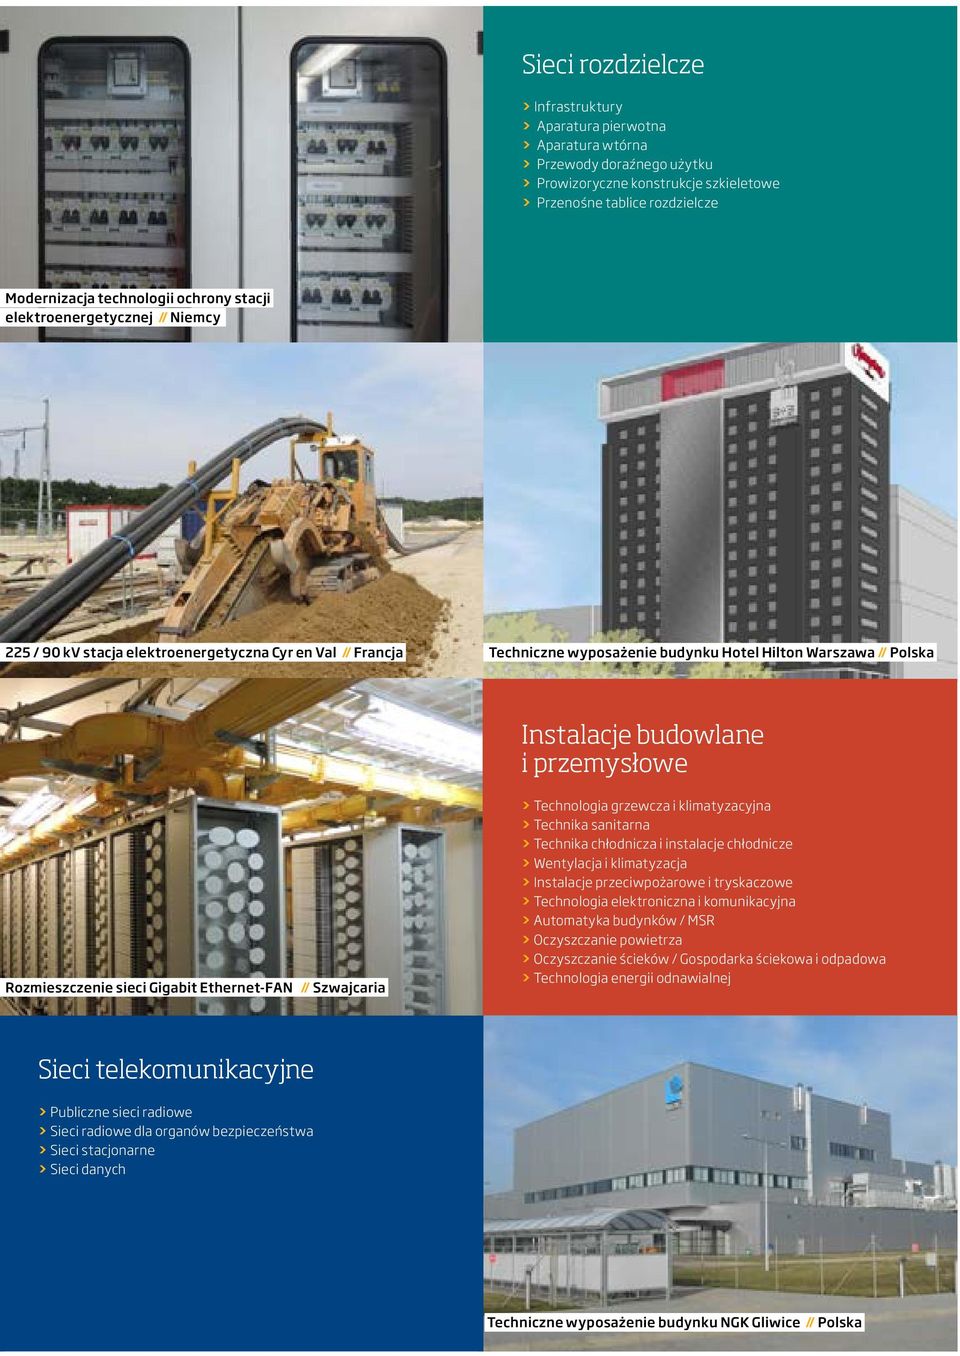 Instalacje budowlane i przemysłowe Rozmieszczenie sieci Gigabit Ethernet-FAN // Szwajcaria > > Technologia grzewcza i klimatyzacyjna > > Technika sanitarna > > Technika chłodnicza i instalacje